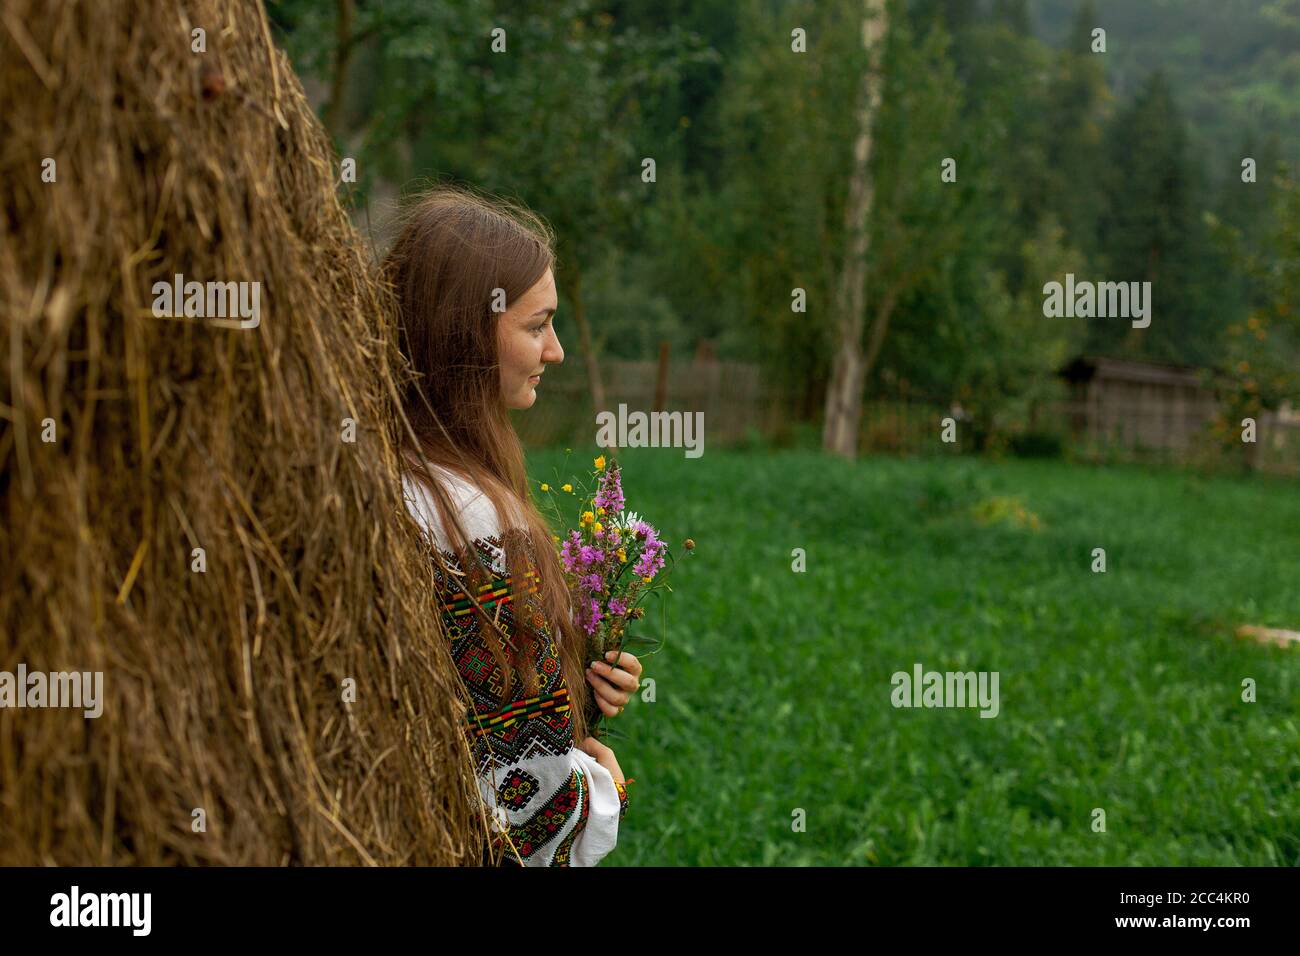 chica con pelo suelto con un ramo de flores silvestres se pone de pie por un pajar Foto de stock